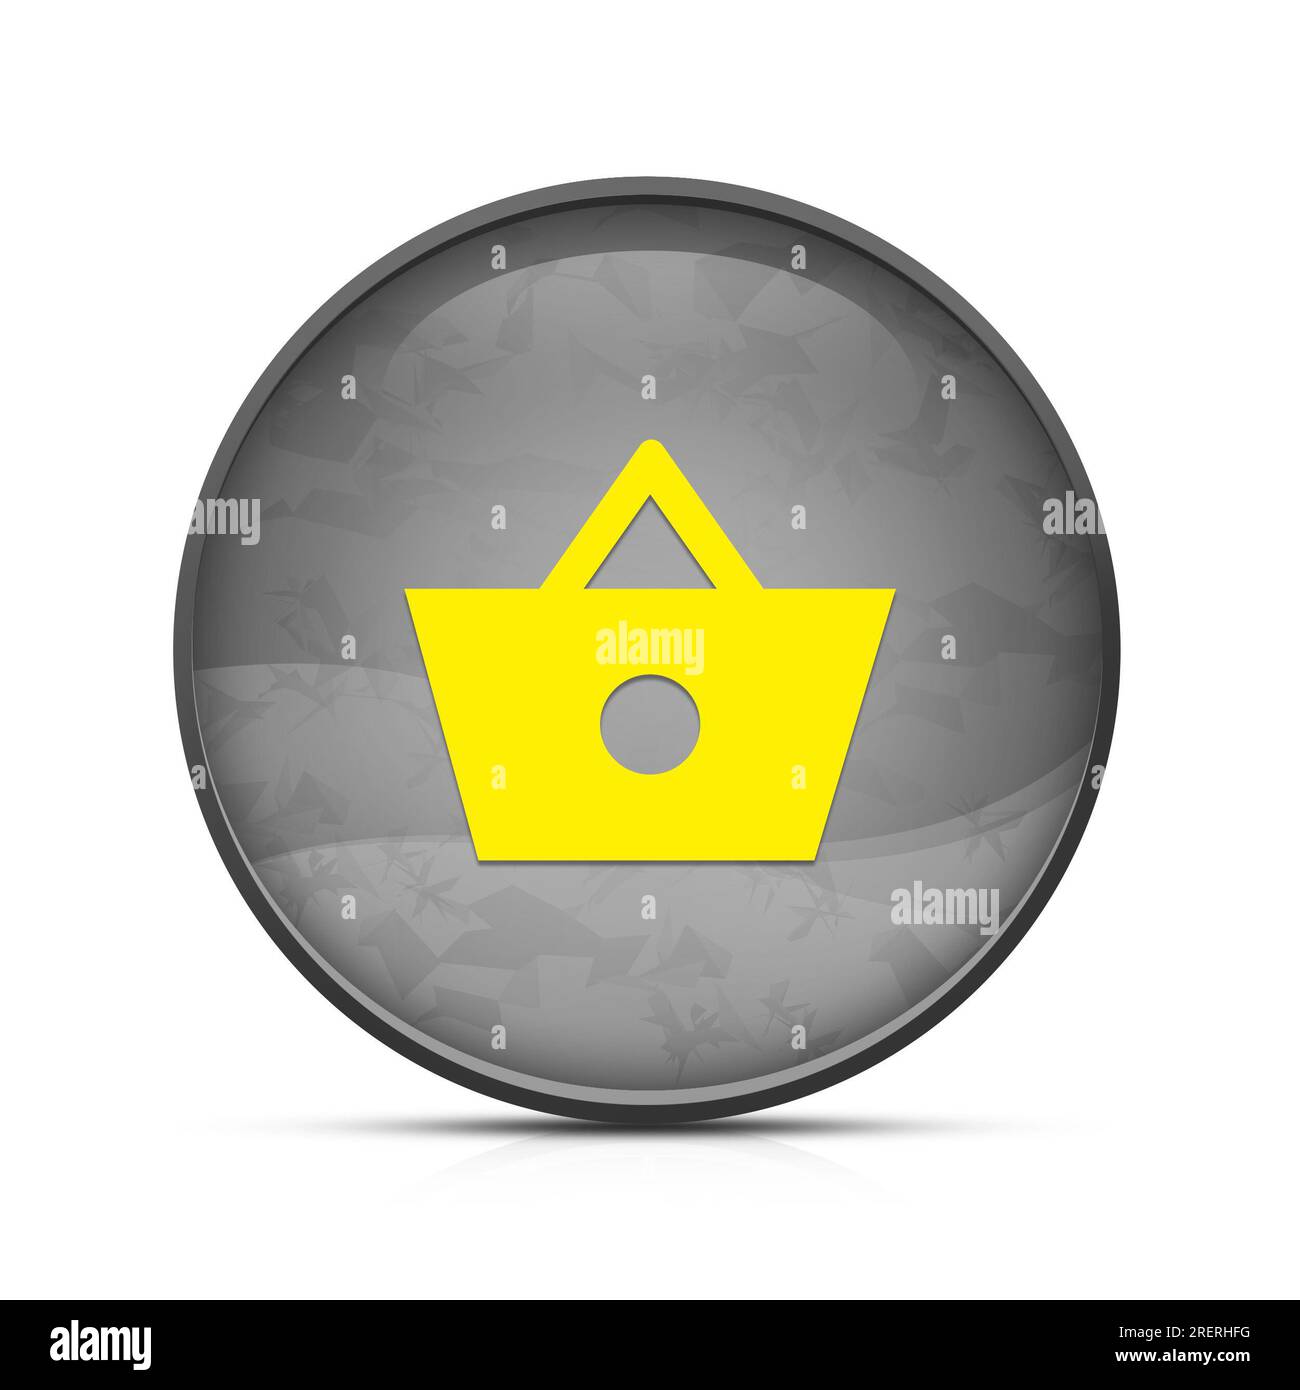 Shopping basket icon on classy splash black round button Stock Photo - Alamy